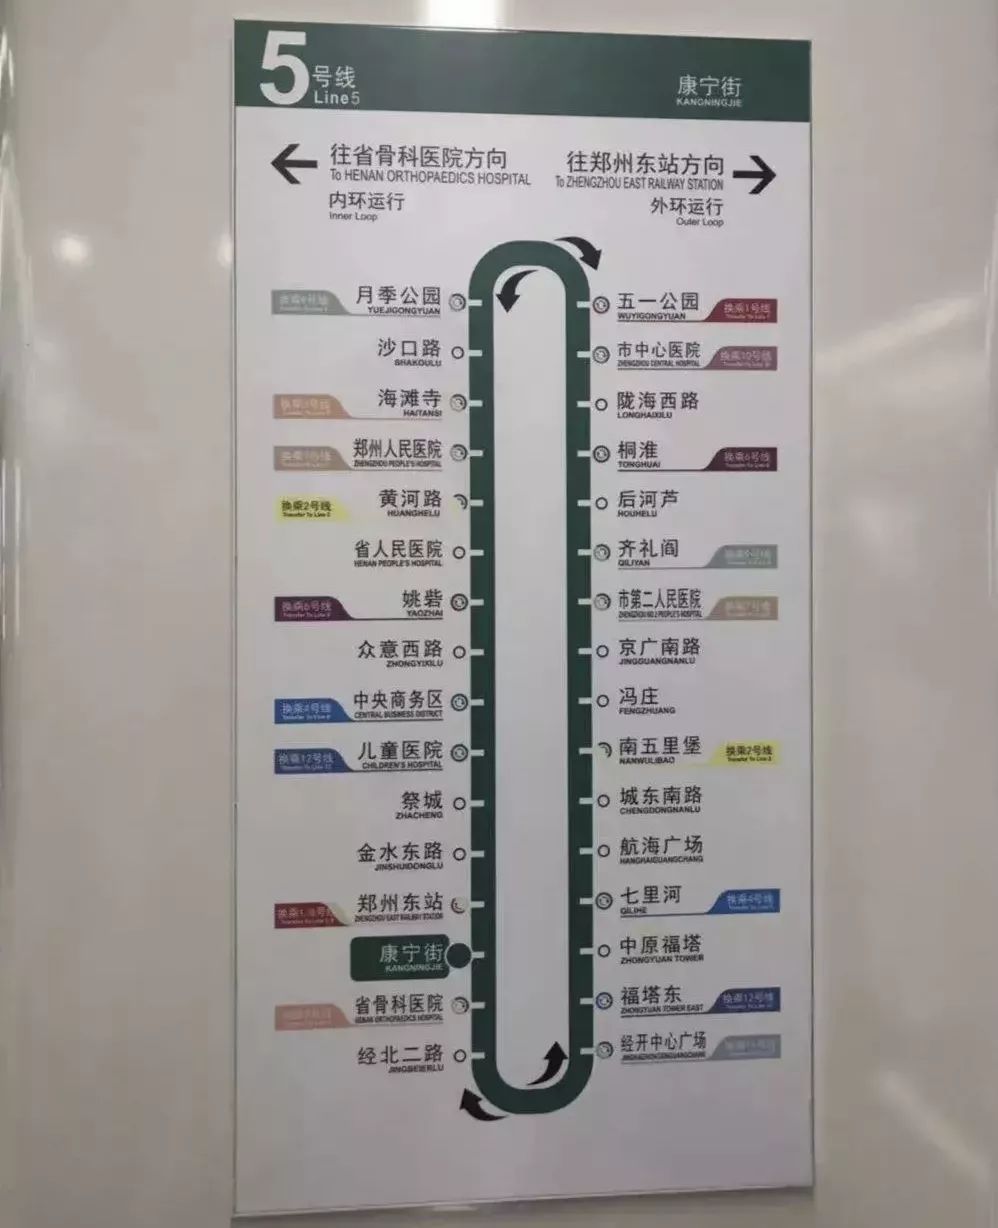 首发郑州地铁5号线环游手绘攻略